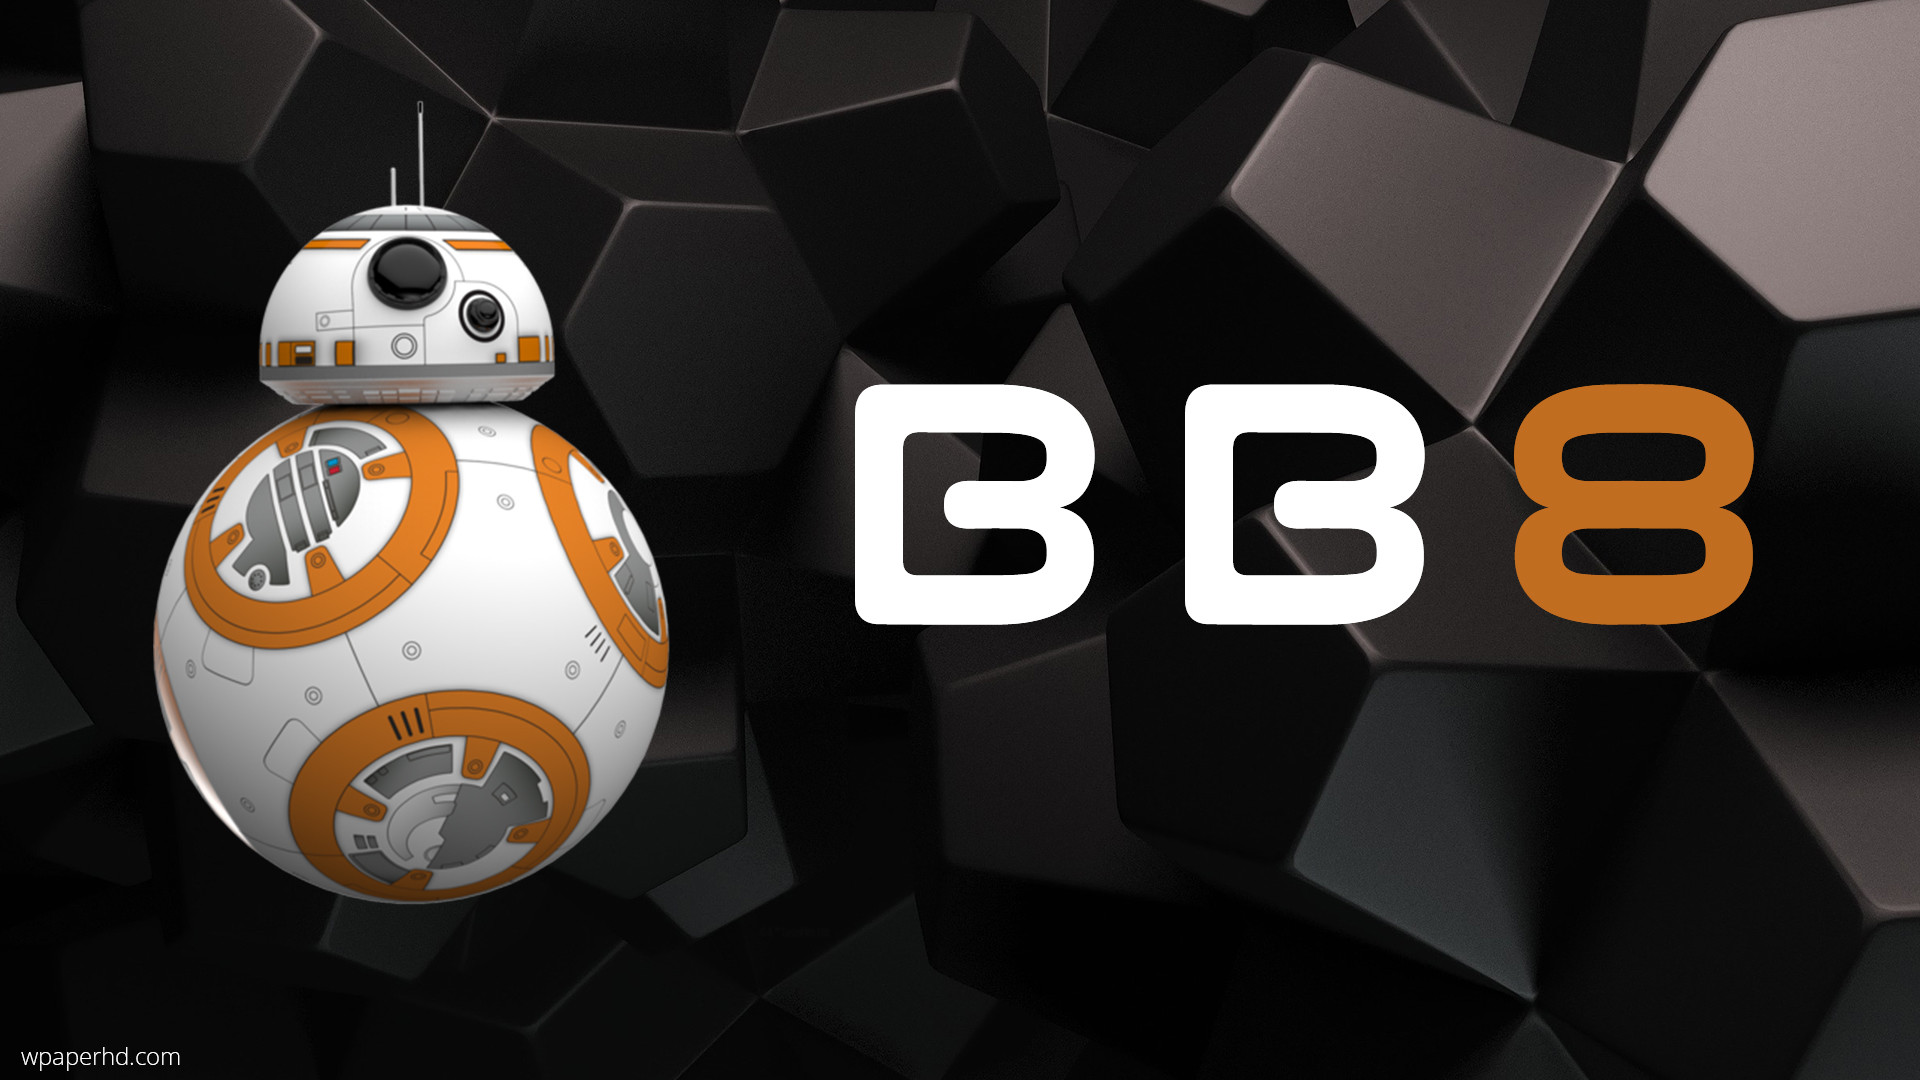 Star Wars BB8 wallpaper HD. Free desktop background 2016 in category .